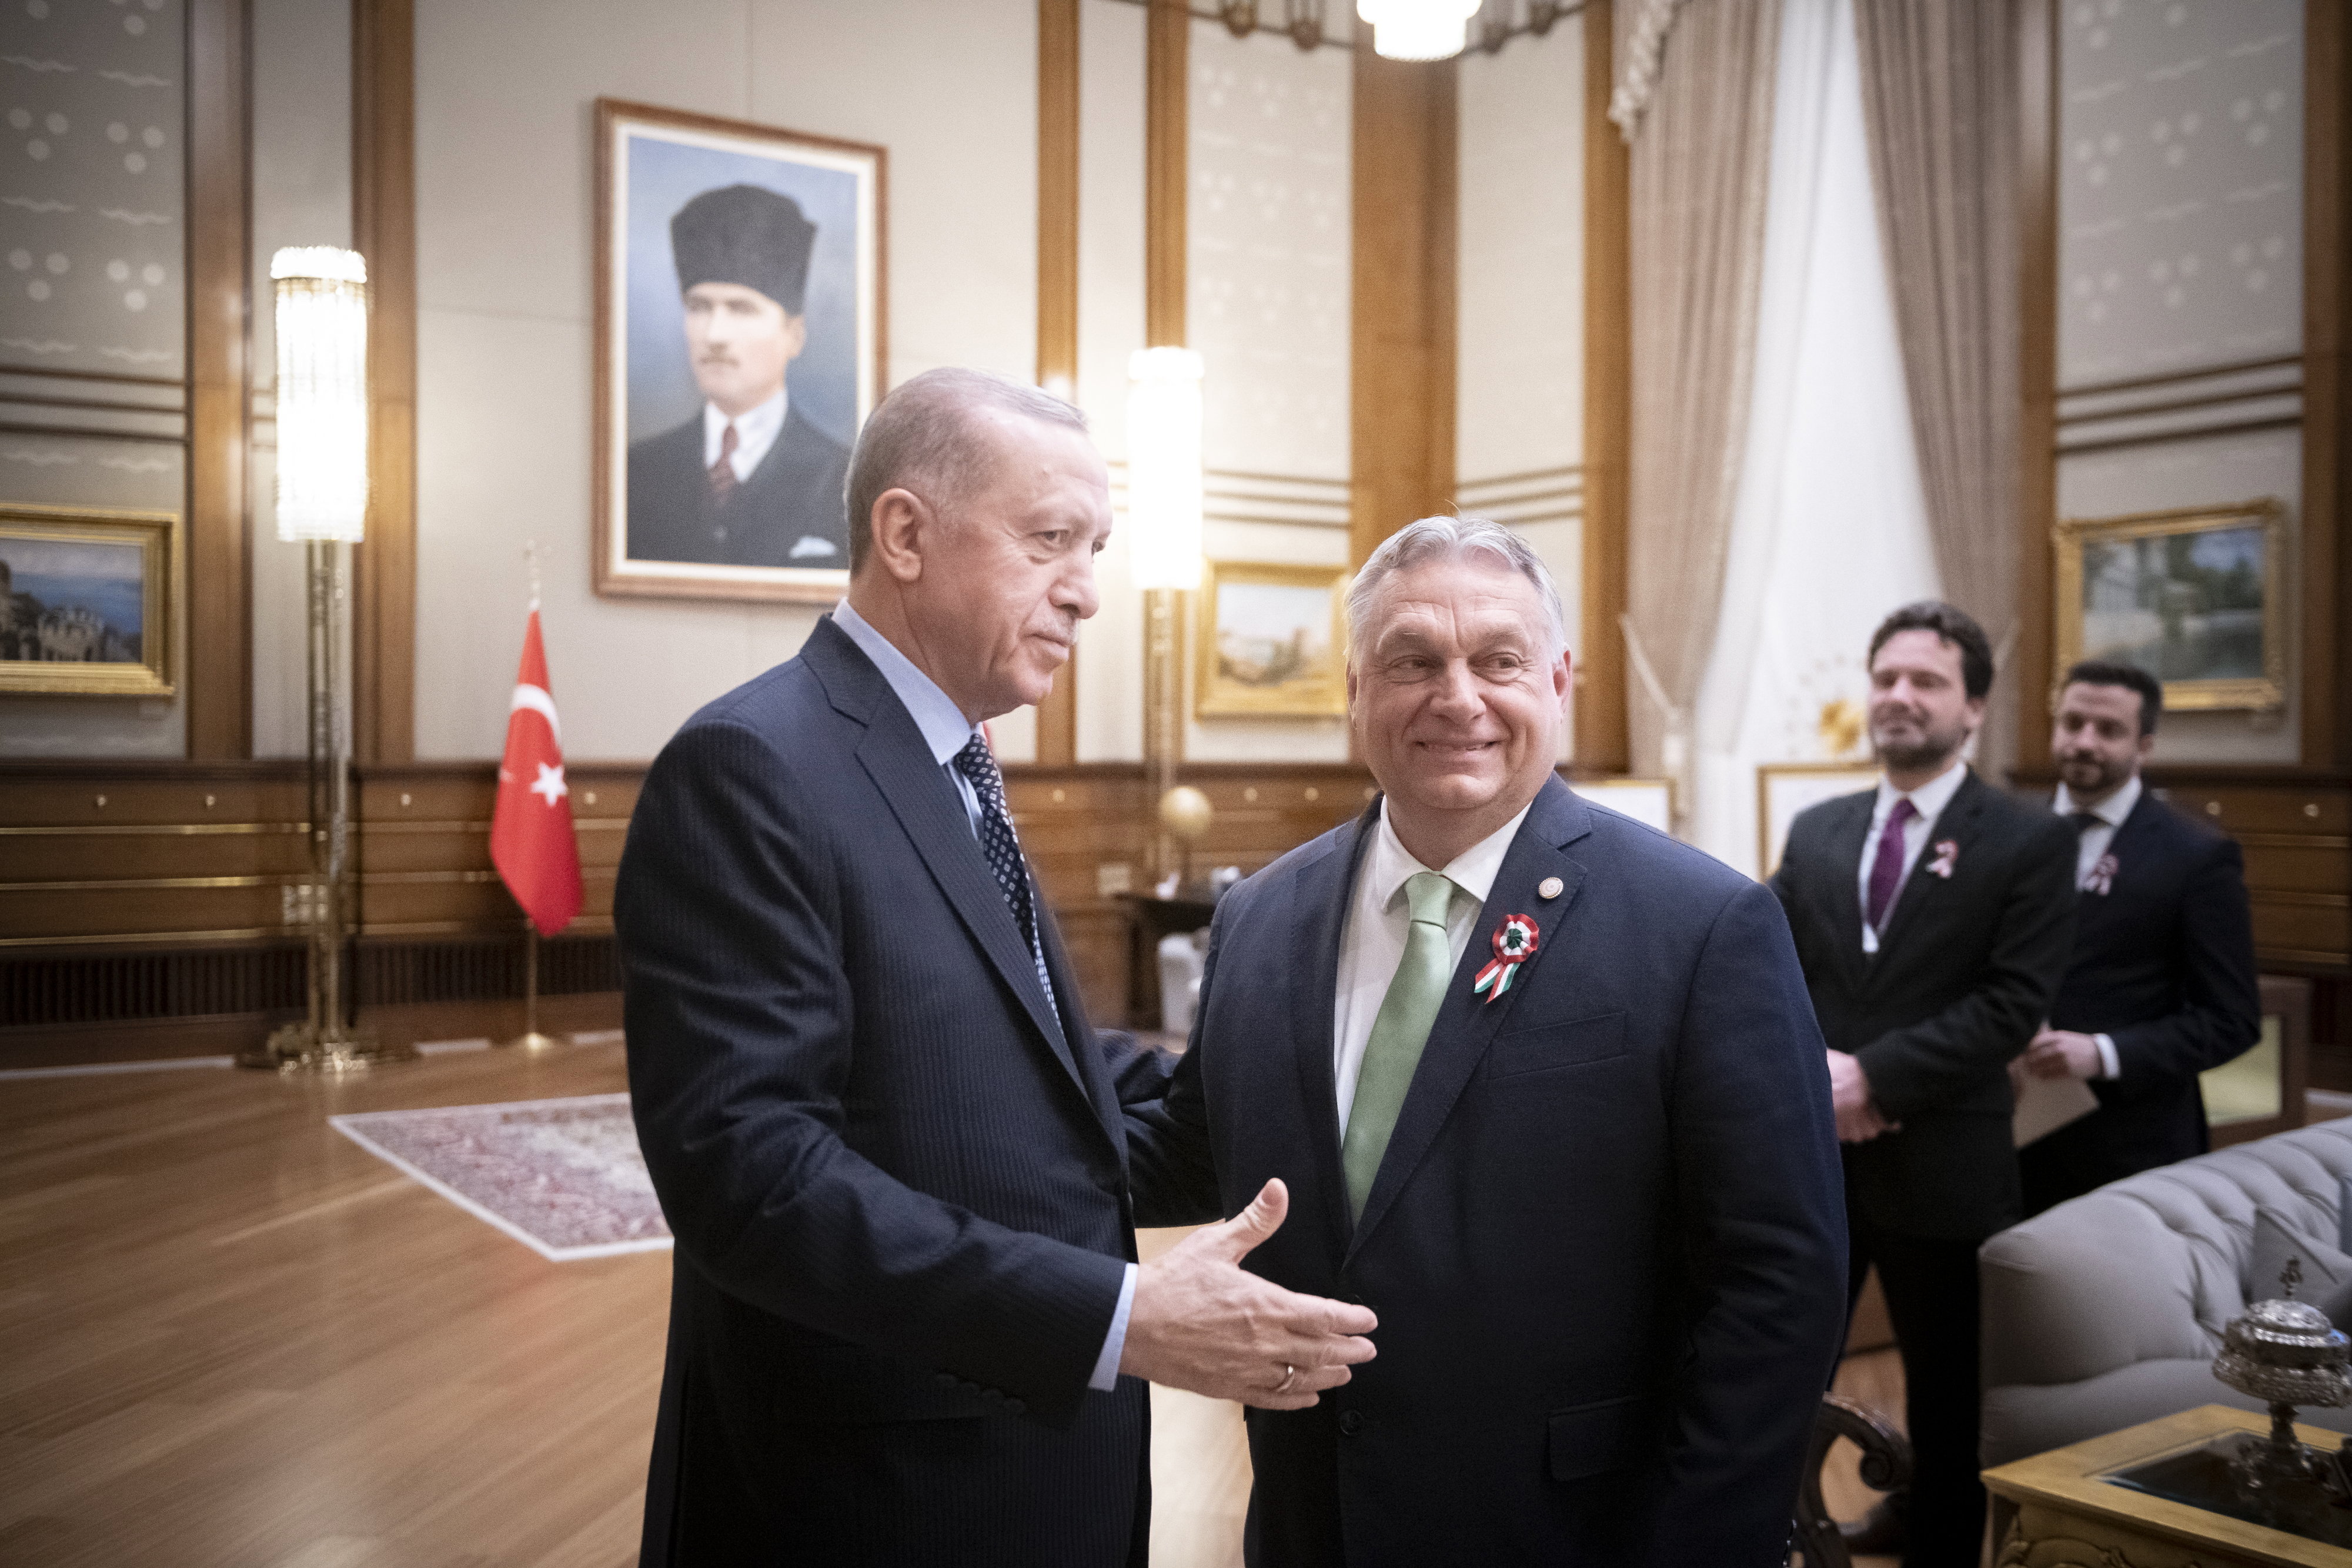 Orbán Meets With Erdogan in Ankara